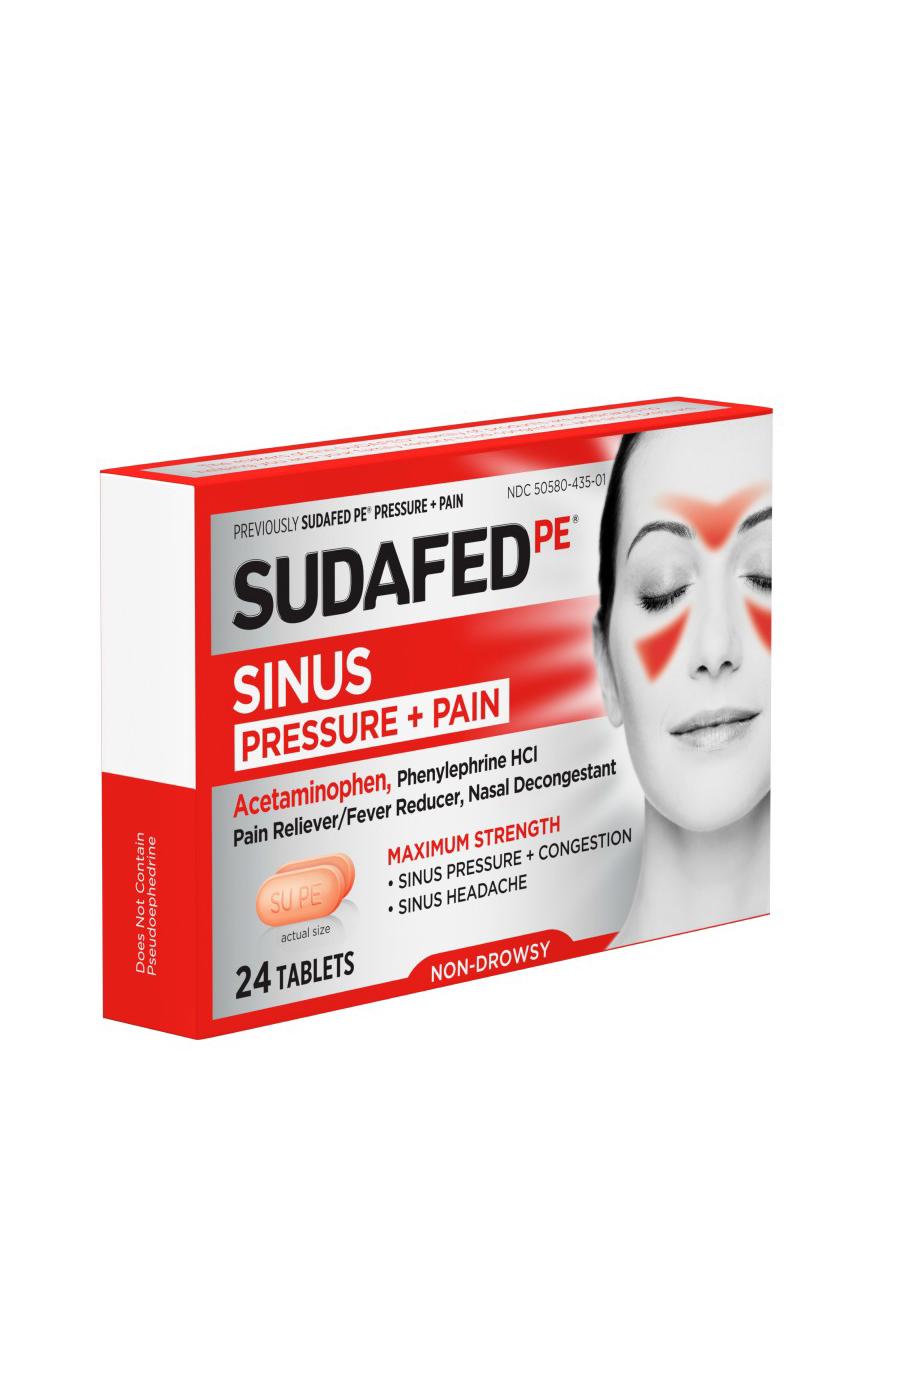 Sudafed PE Sinus Pressure + Pain Tablets; image 3 of 7